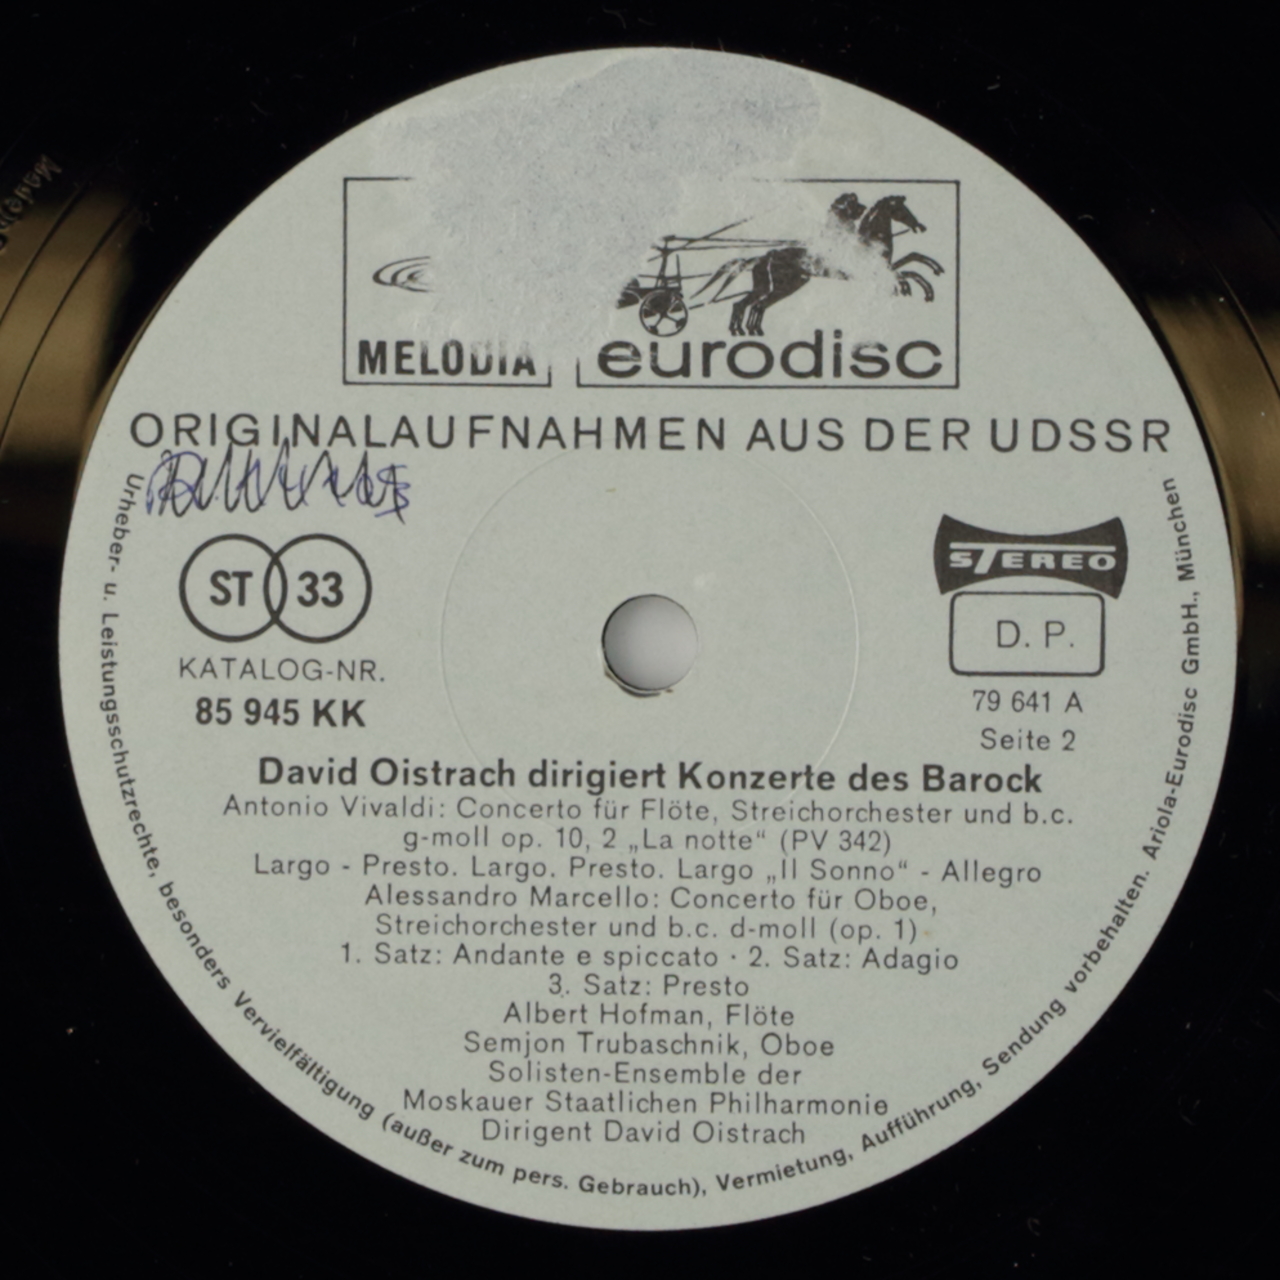 David Oistrach dirigiert Konzerte des Barock